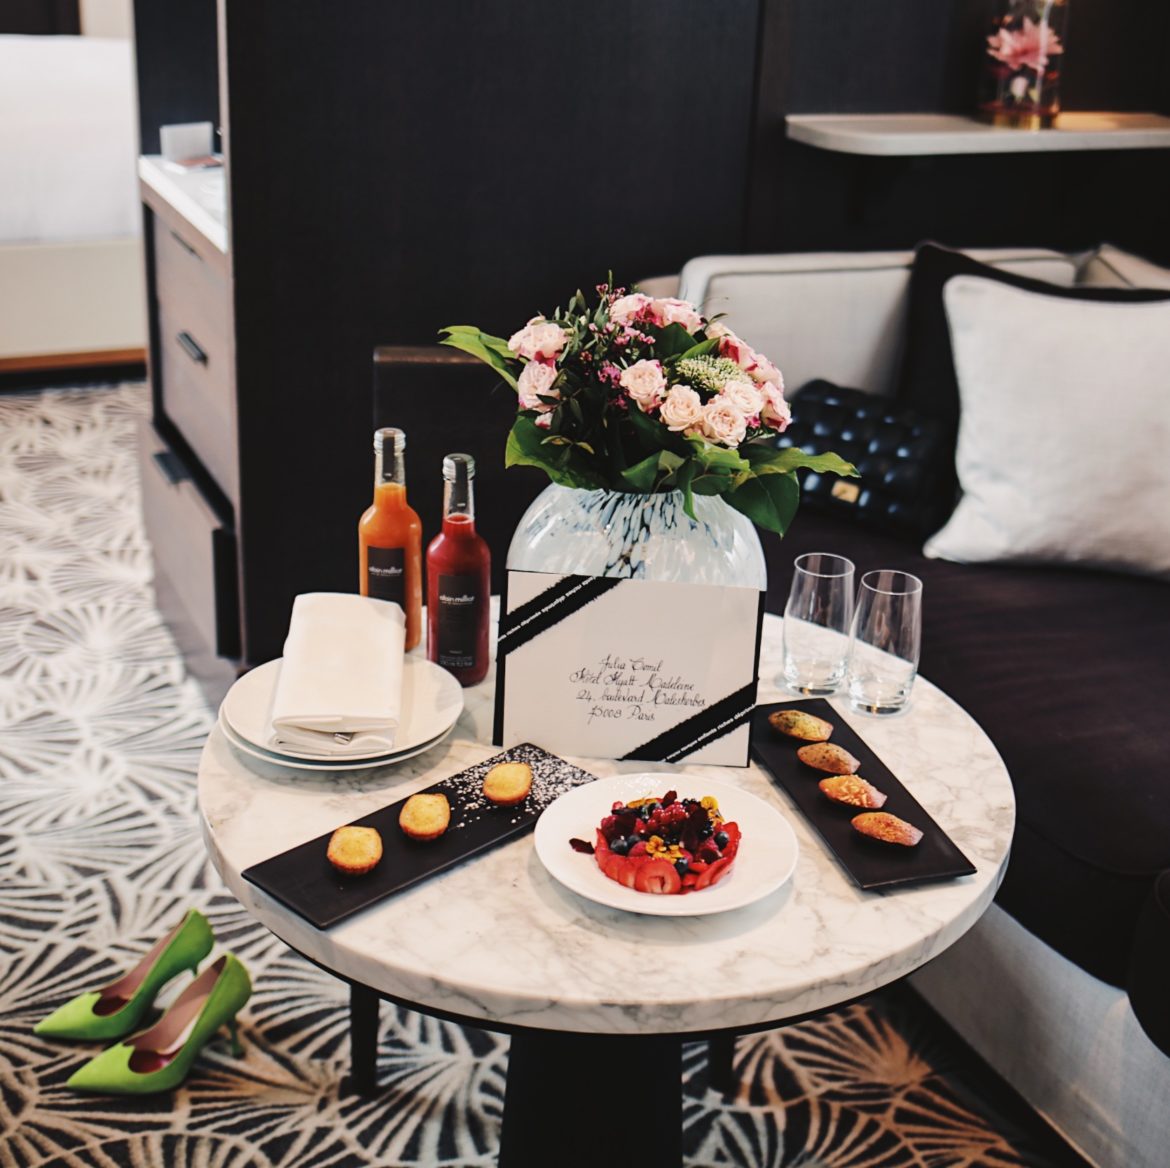 Hotel-Hyatt-Paris-Madeleine-Review-roomservice-luxury-5-star-hotels